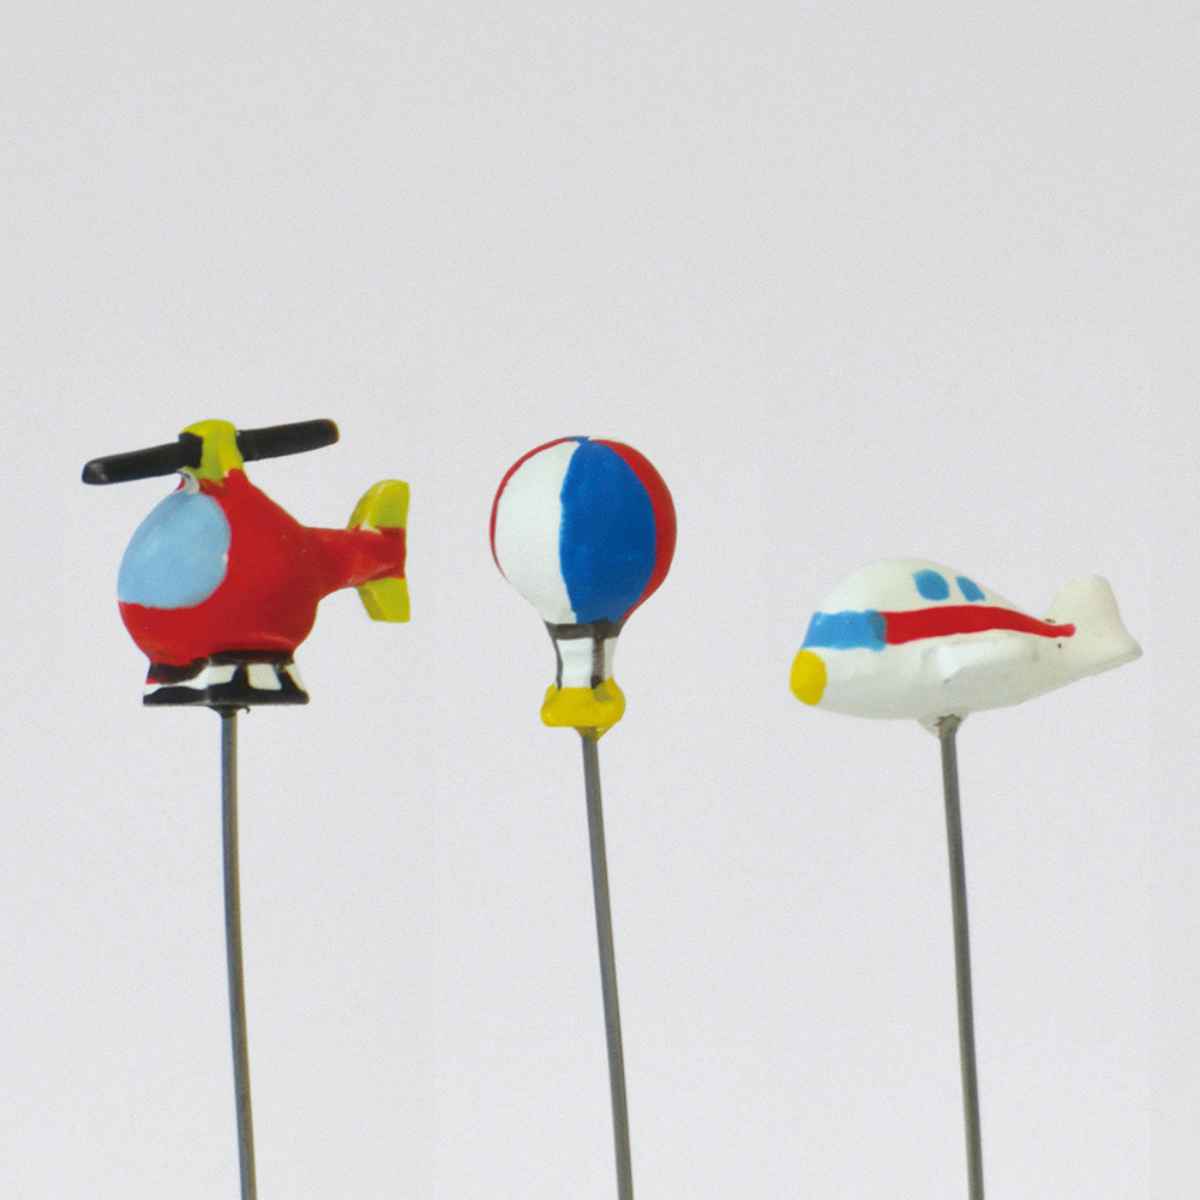 サイズ約 5〜6（cm）内容量3本入り（ヘリコプターピック、気球ピック、飛行機ピック、各1本）材質レジン、スチール生産国フィリピン製区分返品・キャンセル区分（小型商品）ギフトラッピングページを見る園芸用品カテゴリから探す●ヘリコプター、気球、飛行機のピックが1本ずつ入った、ミニピック3本セットです。●レジンで作られたとても小さなピックです。●デフォルメされたデザインとミニマムなサイズ感が堪らないアイテムです。●小さなポットやプランターを飾るインドアガーデニングにもピッタリです。おすすめポイントプランターに手軽にアクセントを付けられるヘリコプター、気球、飛行機のピックが1本ずつ入った、ミニピック3本セットです。レジンで作られたとても小さいピックなので、小さなポットやプランターを飾るインドアガーデニングにもピッタリです。商品詳細こだわりのある細かな作りデフォルメされたデザインとミニマムなサイズ感が堪らないシリーズです。こだわりのある細かな作りで、ガーデニングアイテムに最適です。サイズ※同シリーズ別商品の写真を使用していますが、大きさは共通です。ご注意点※ハンドメイドの為、サイズや色、焼印などに個体差が生じる場合があります。関連キーワード：グッズ ミニ ガーデニングピック ガーデニング ガーデン サインピック スティック 園芸用品 園芸ピック 園芸グッズ 植木鉢 プランター 植物 オブジェ ディスプレイ インテリア小物 庭 飾り 飾る オシャレ かわいい カワイイ 可愛い オーナメントピック 癒し 癒やし おすすめ オススメ LH7350よく一緒に購入されている商品ガーデンピック ミニピック スクーター 汽車 572円ガーデンピック ミニピック 傘 風車 ハウス 572円フラワーピック アリス 白うさぎ チェシャ猫 1,190円ガーデンピック ミニピック フランス イギリス572円関連商品はこちらガーデンピック ミニピック スクーター 汽車 572円ガーデンピック ミニピック 傘 風車 ハウス 572円ガーデンピック ミニピック イチゴ ニンジン 572円ガーデンピック ミニピック フランス イギリス572円ガーデンピック ミニピック カモメ クジラ ヨ572円ガーデンピック ミニピック クワガタ タマムシ572円ガーデンピック ミニピック ホタル トンボ ハ572円ガーデンピック ミニピック オオハシ カメレオ572円ガーデンピック ミニピック スター ハート 旗572円ガーデンピック ミニピック リス ウサギ パン572円ガーデンピック ミニピック カメ ヘビ カエル572円ガーデンピック ミニピック ヒツジ ブタ ウシ572円